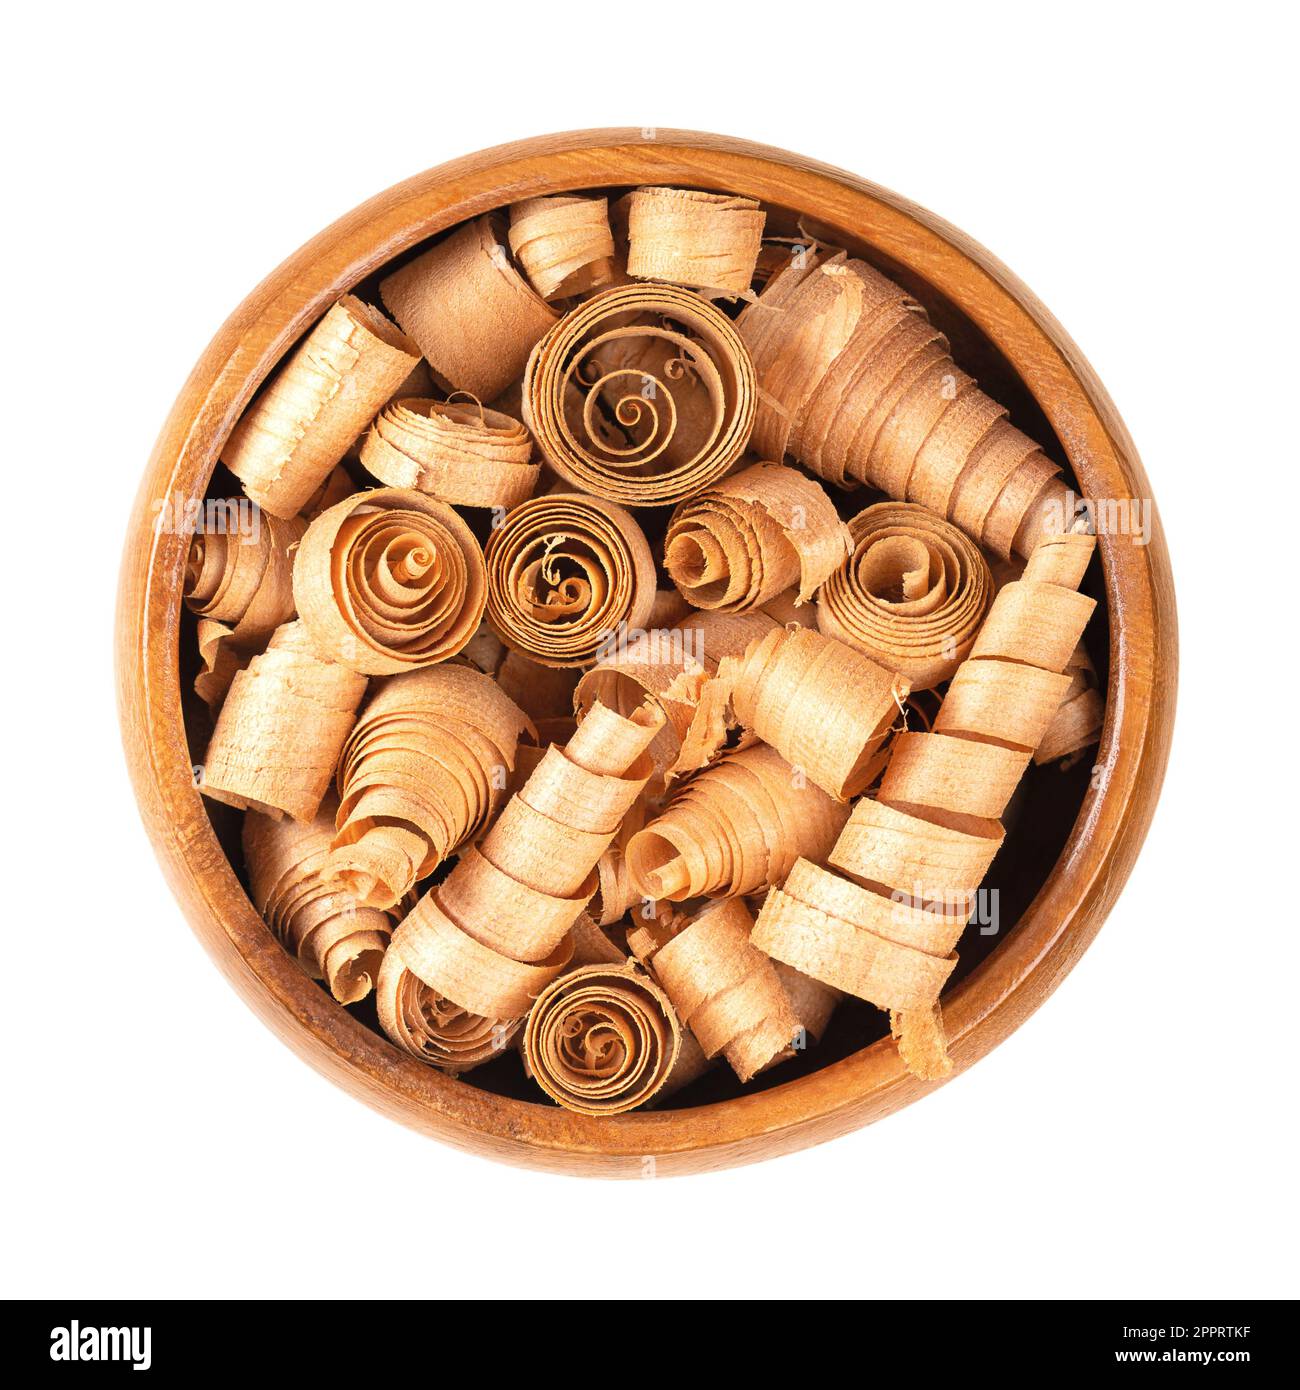 Copeaux de bois en forme de spirale de pin suisse, dans un bol en bois. Pinus cembra, pin blanc européen, avec odeur caractéristique de l'huile essentielle pinosylvine. Banque D'Images